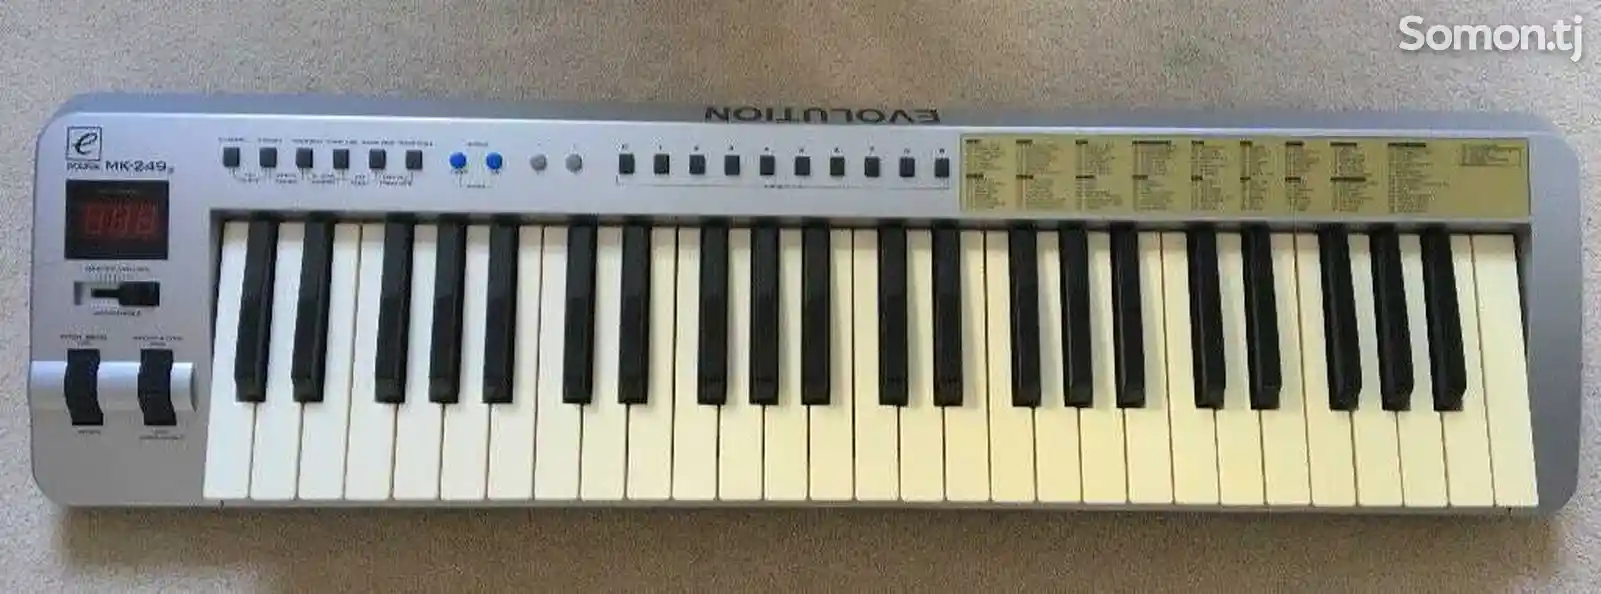 Midi-клавиатура для студии-3